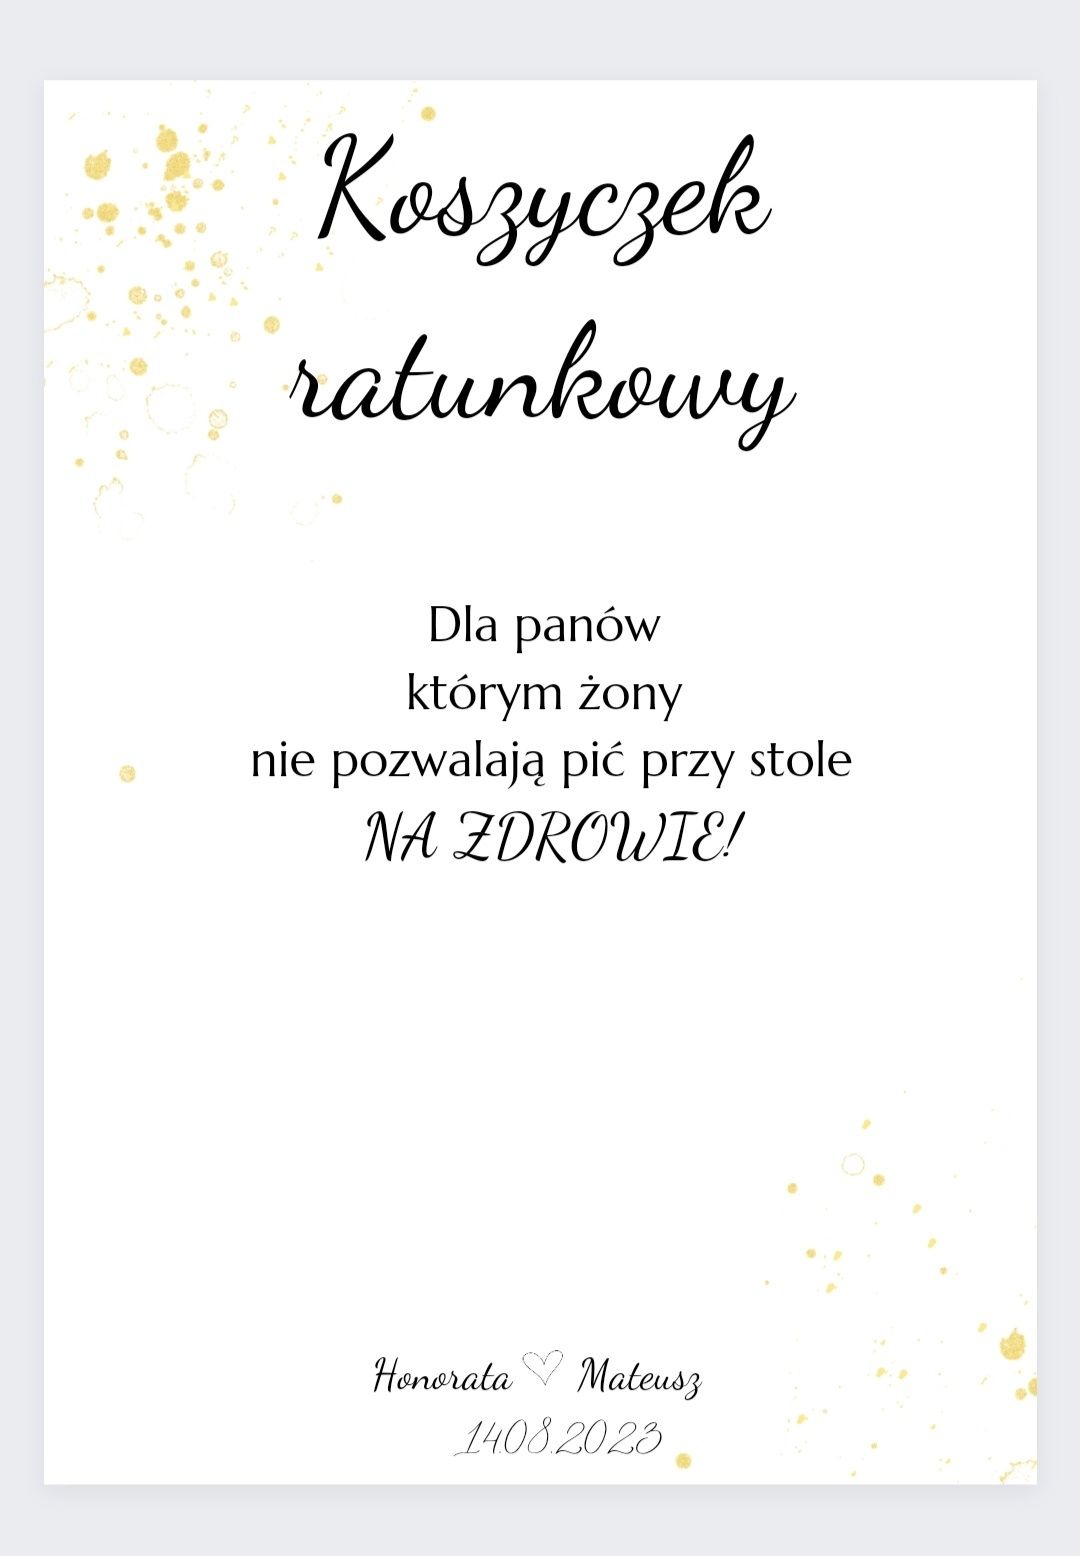 Koszyczek ratunkowy śmieszny napis na wesele ślub przyjęcie wzór pdf